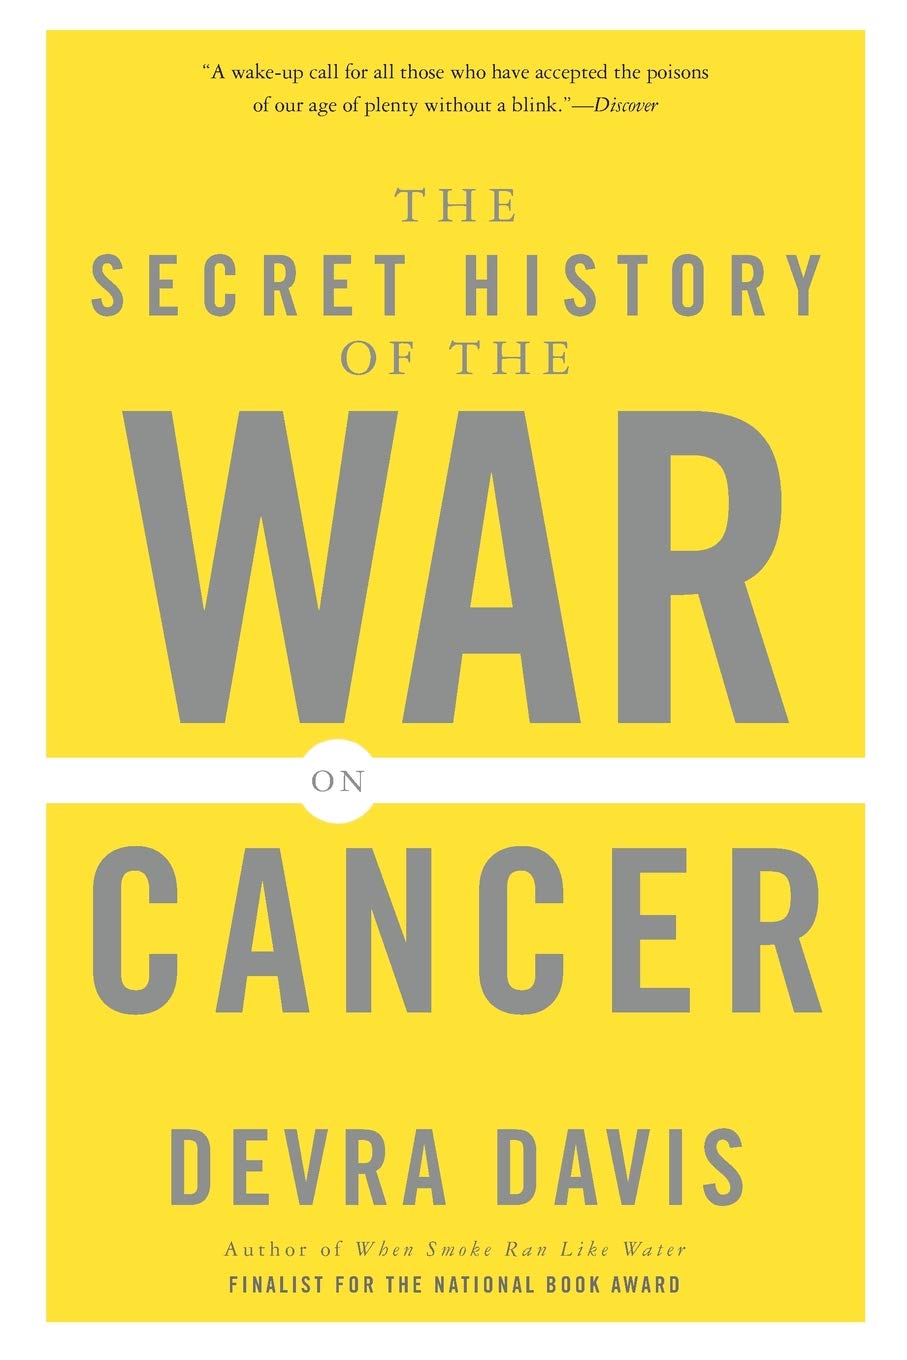 Book cover: Devra Davis 2007 Secret History of the War on Cancer